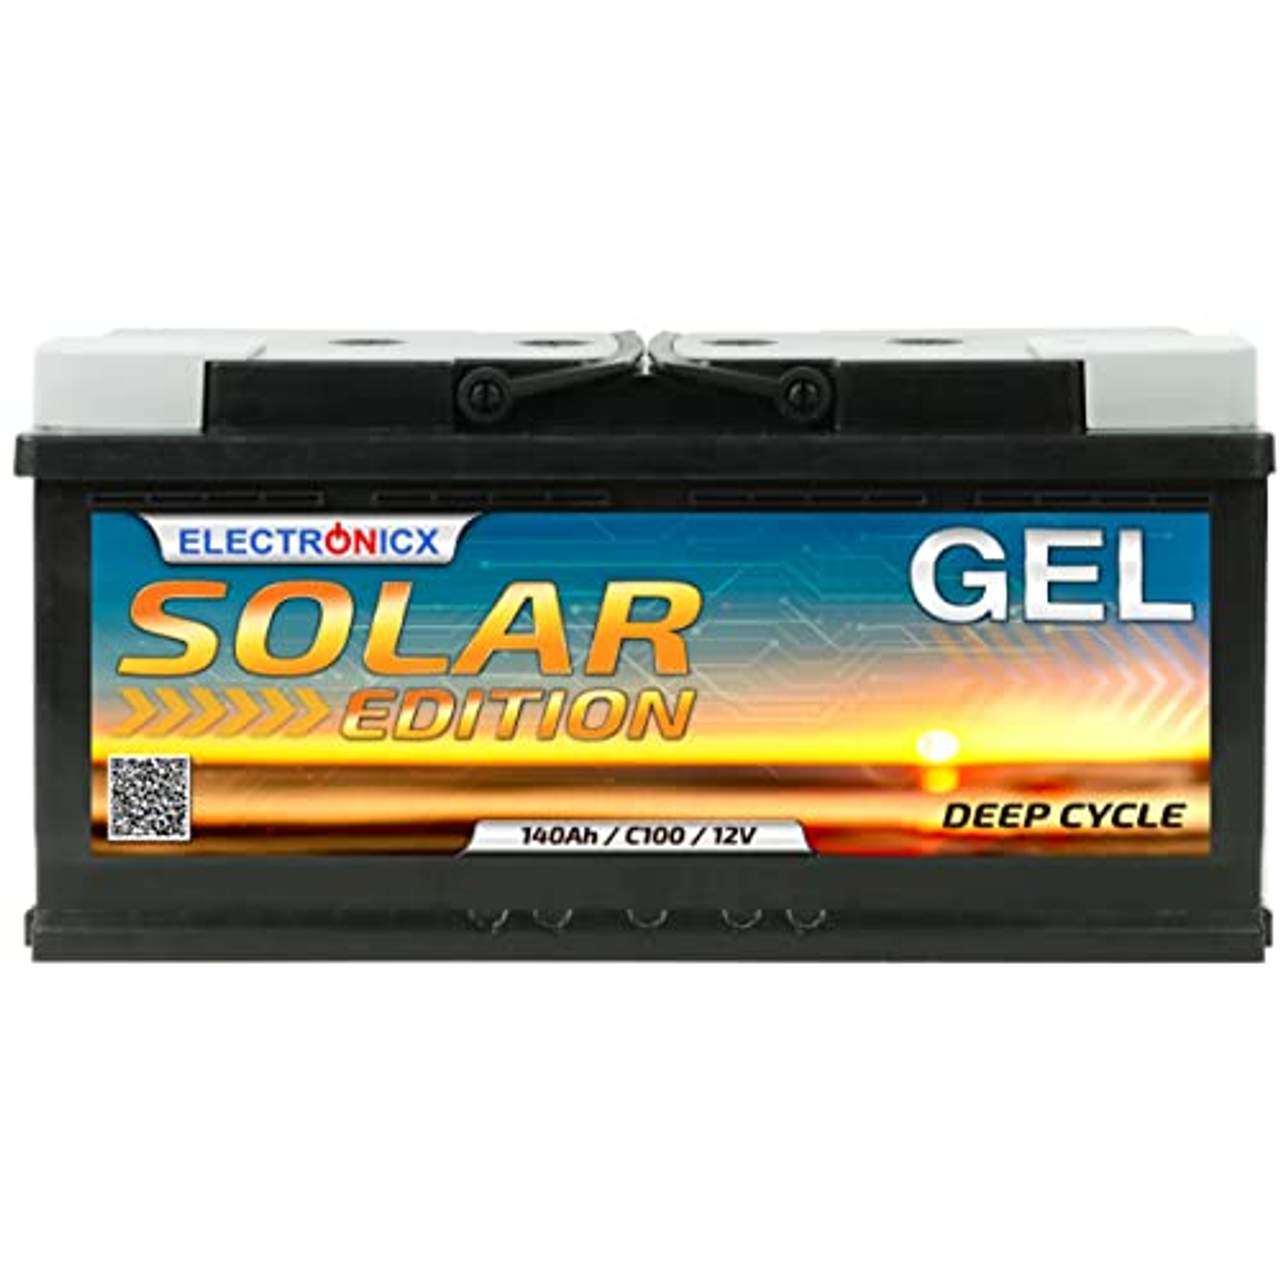 Solarbatterie 12v 140Ah Gel Batterie Electronicx Solar Edition Solarbatterie 12v Akku 12v Solar Batterien